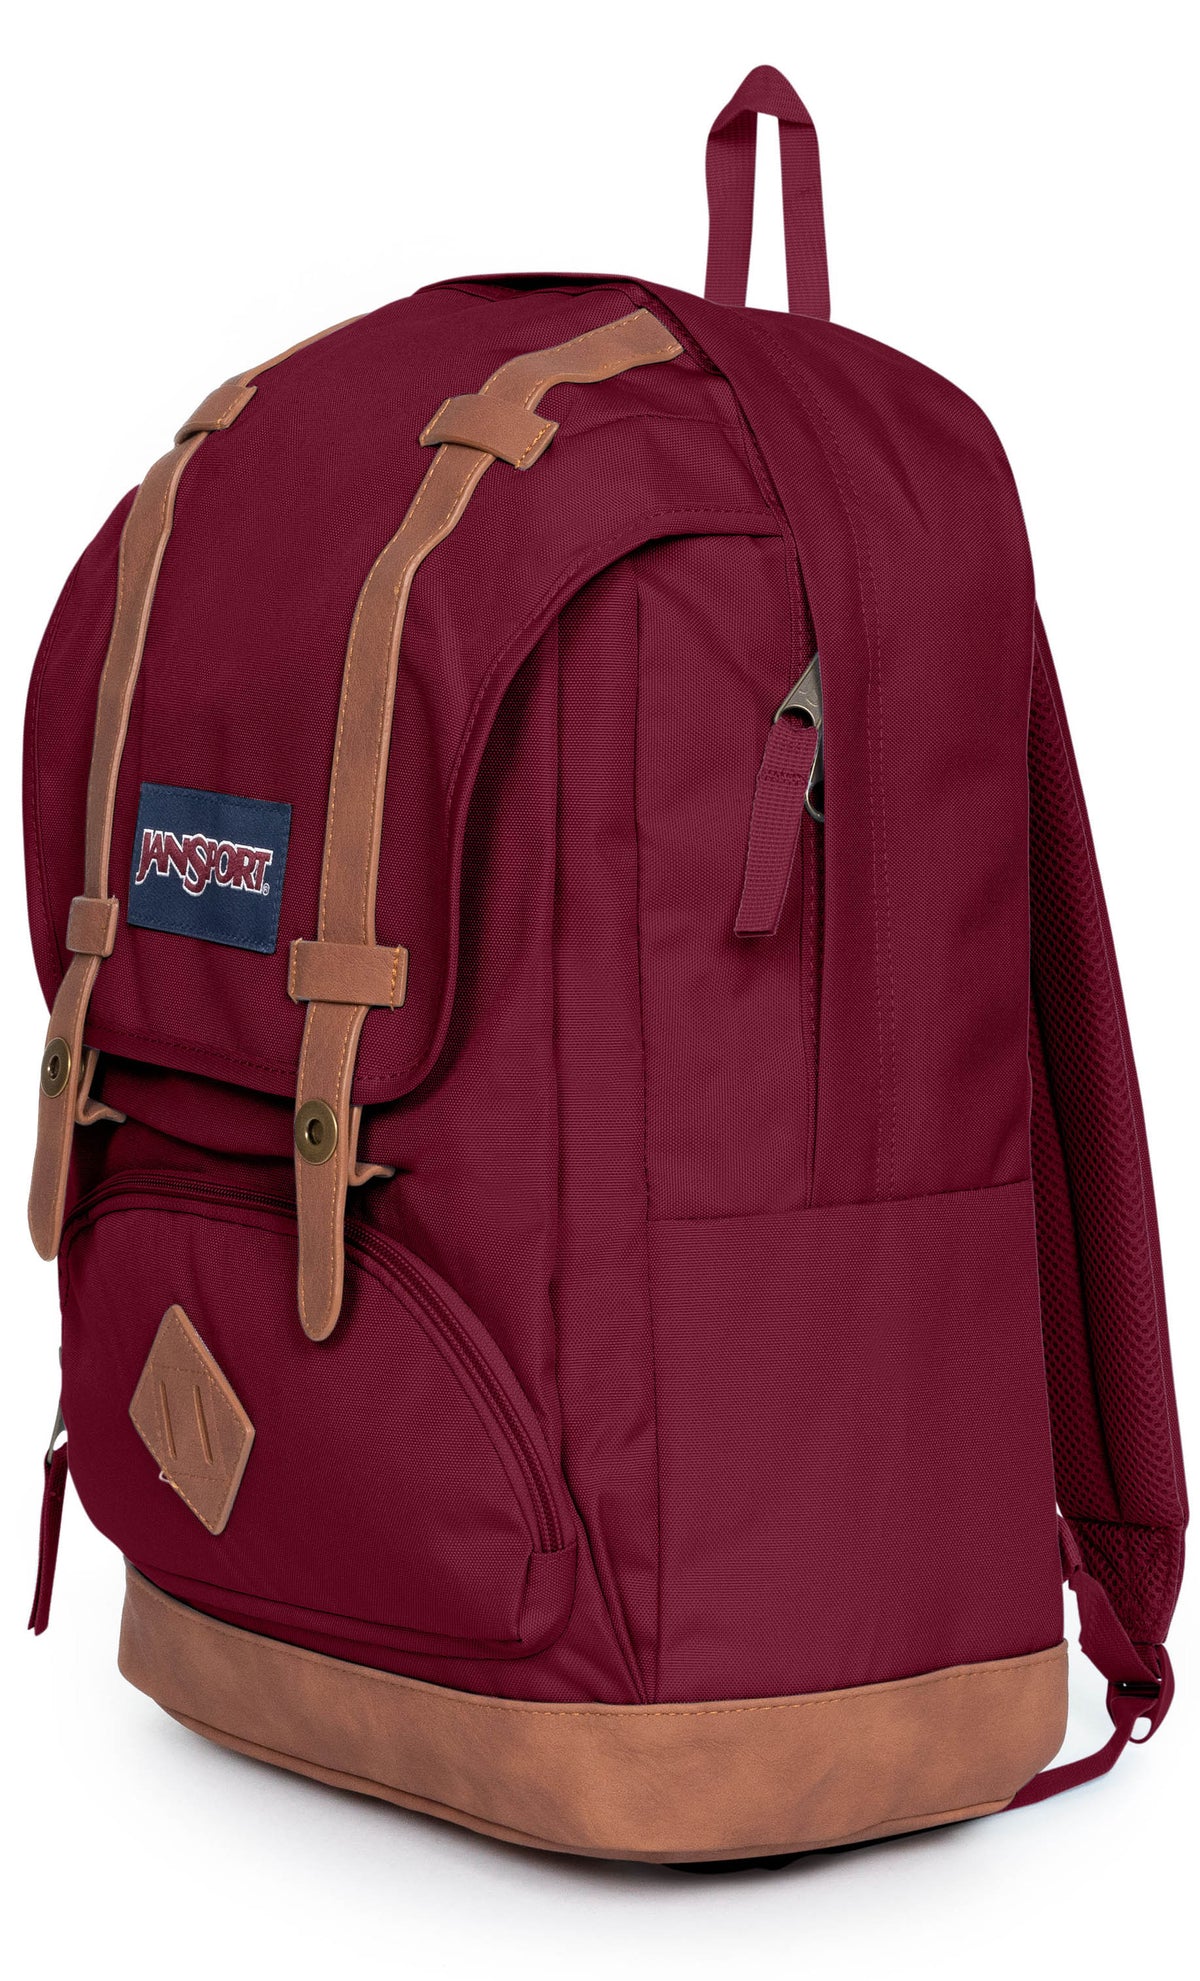 Jansport Cortlandt Backpack - Russet Red